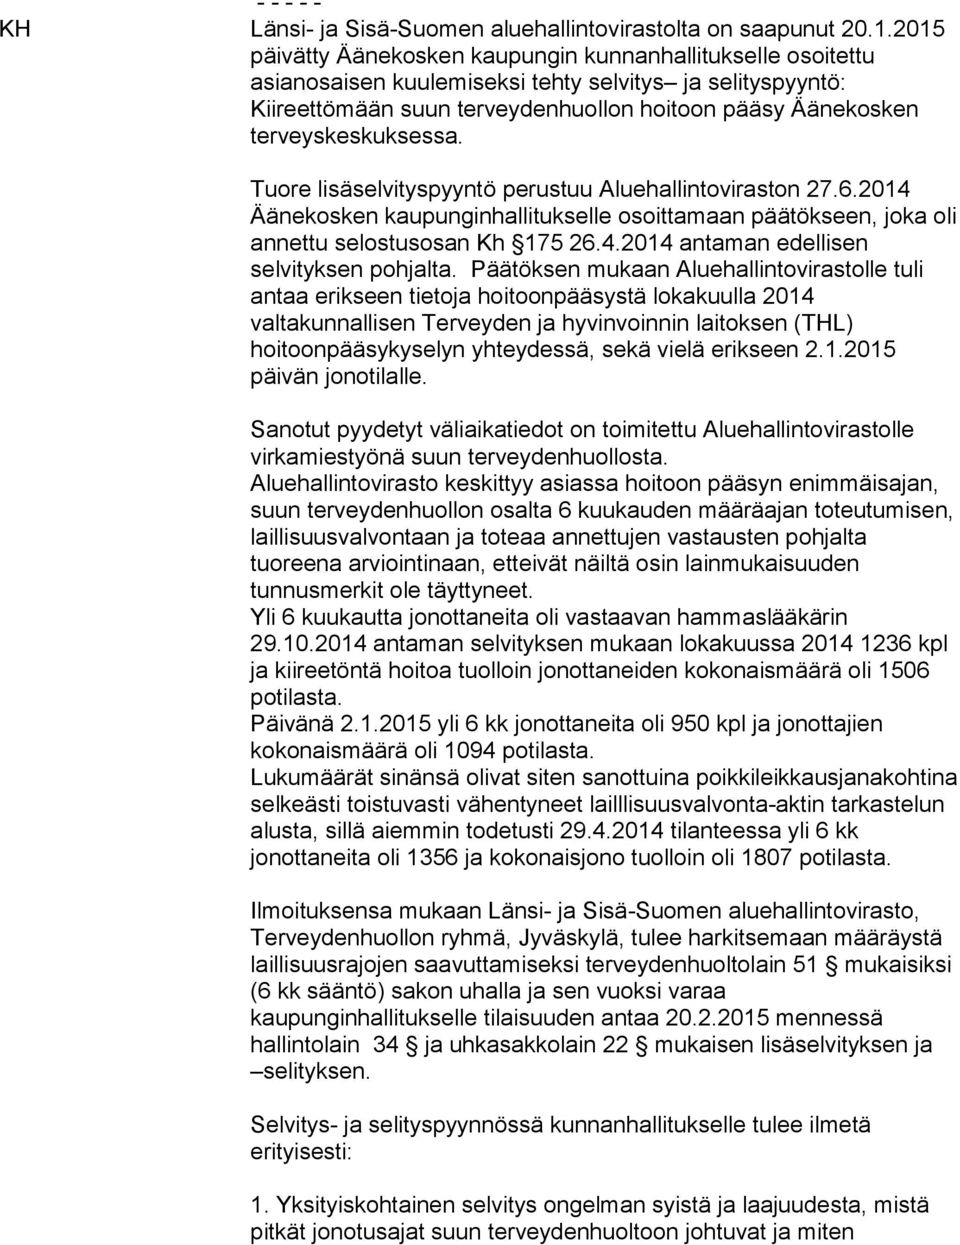 terveyskeskuksessa. Tuore lisäselvityspyyntö perustuu Aluehallintoviraston 27.6.2014 Äänekosken kaupunginhallitukselle osoittamaan päätökseen, joka oli annettu selostusosan Kh 175 26.4.2014 antaman edellisen selvityksen pohjalta.